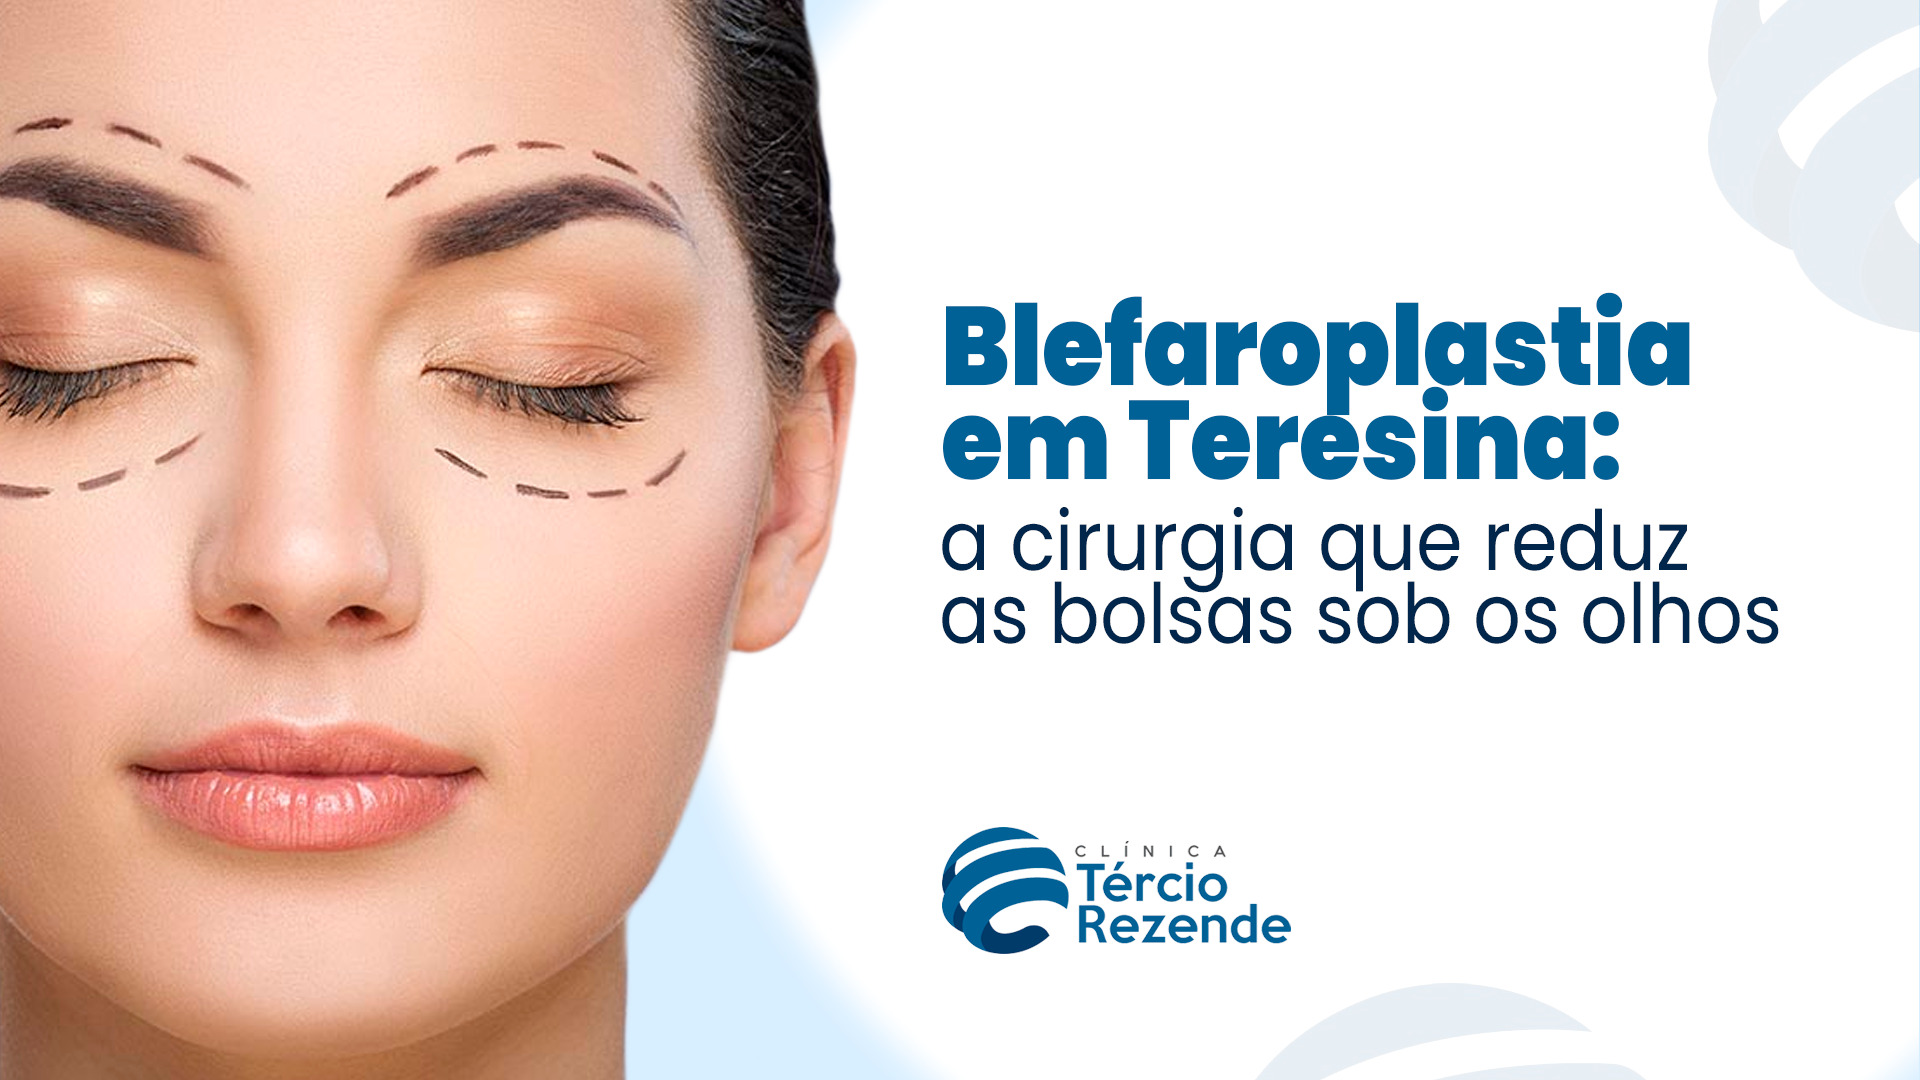 Blefaroplastia em Teresina: a cirurgia que reduz as bolsas sob os olhos